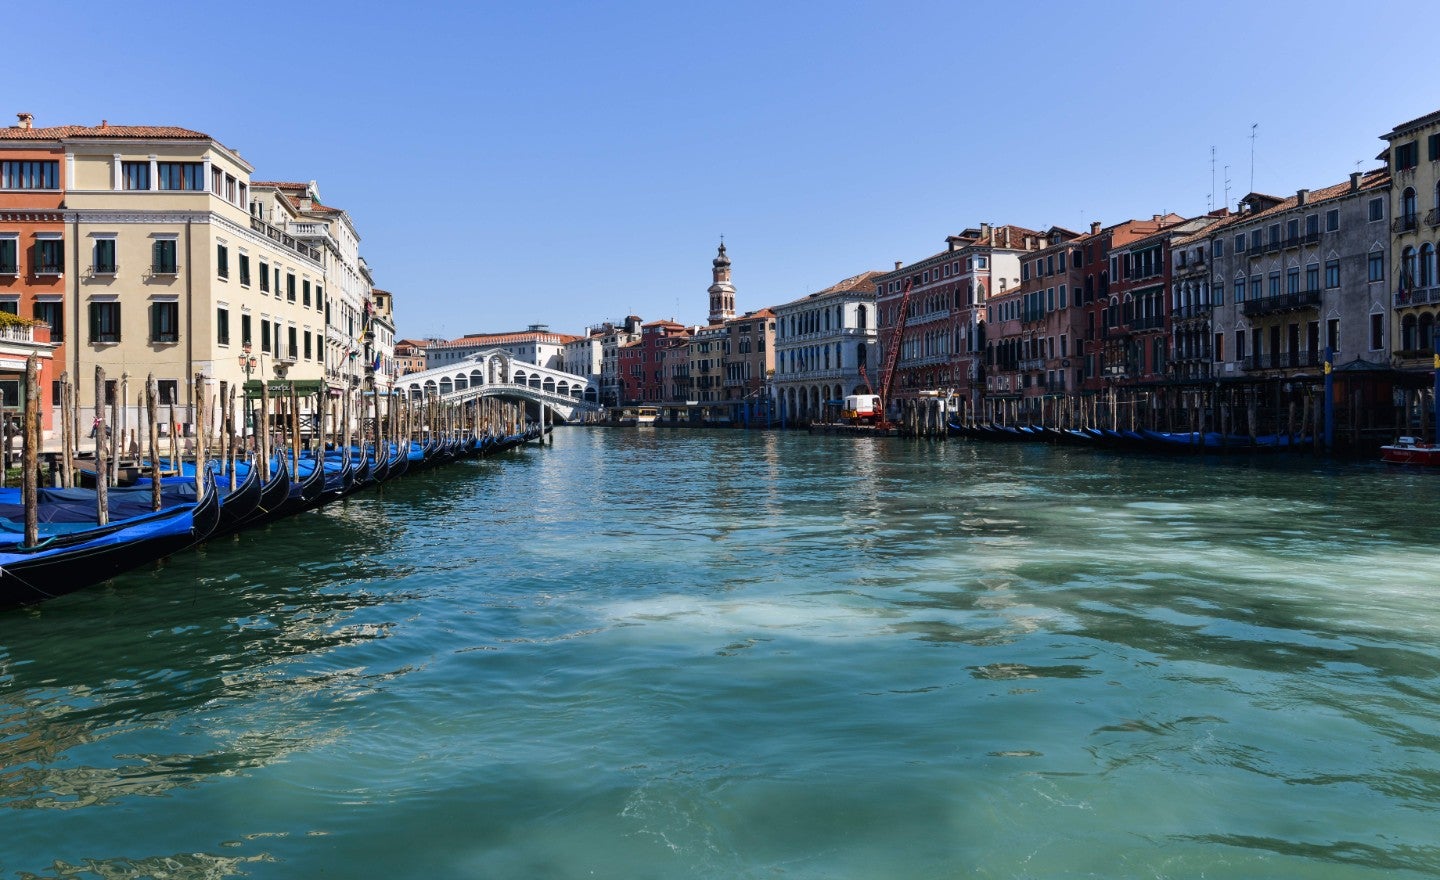 Στη Βενετία η πρώτη καραντίνα – Η βουβωνική πανώλη και οι ναυτικοί